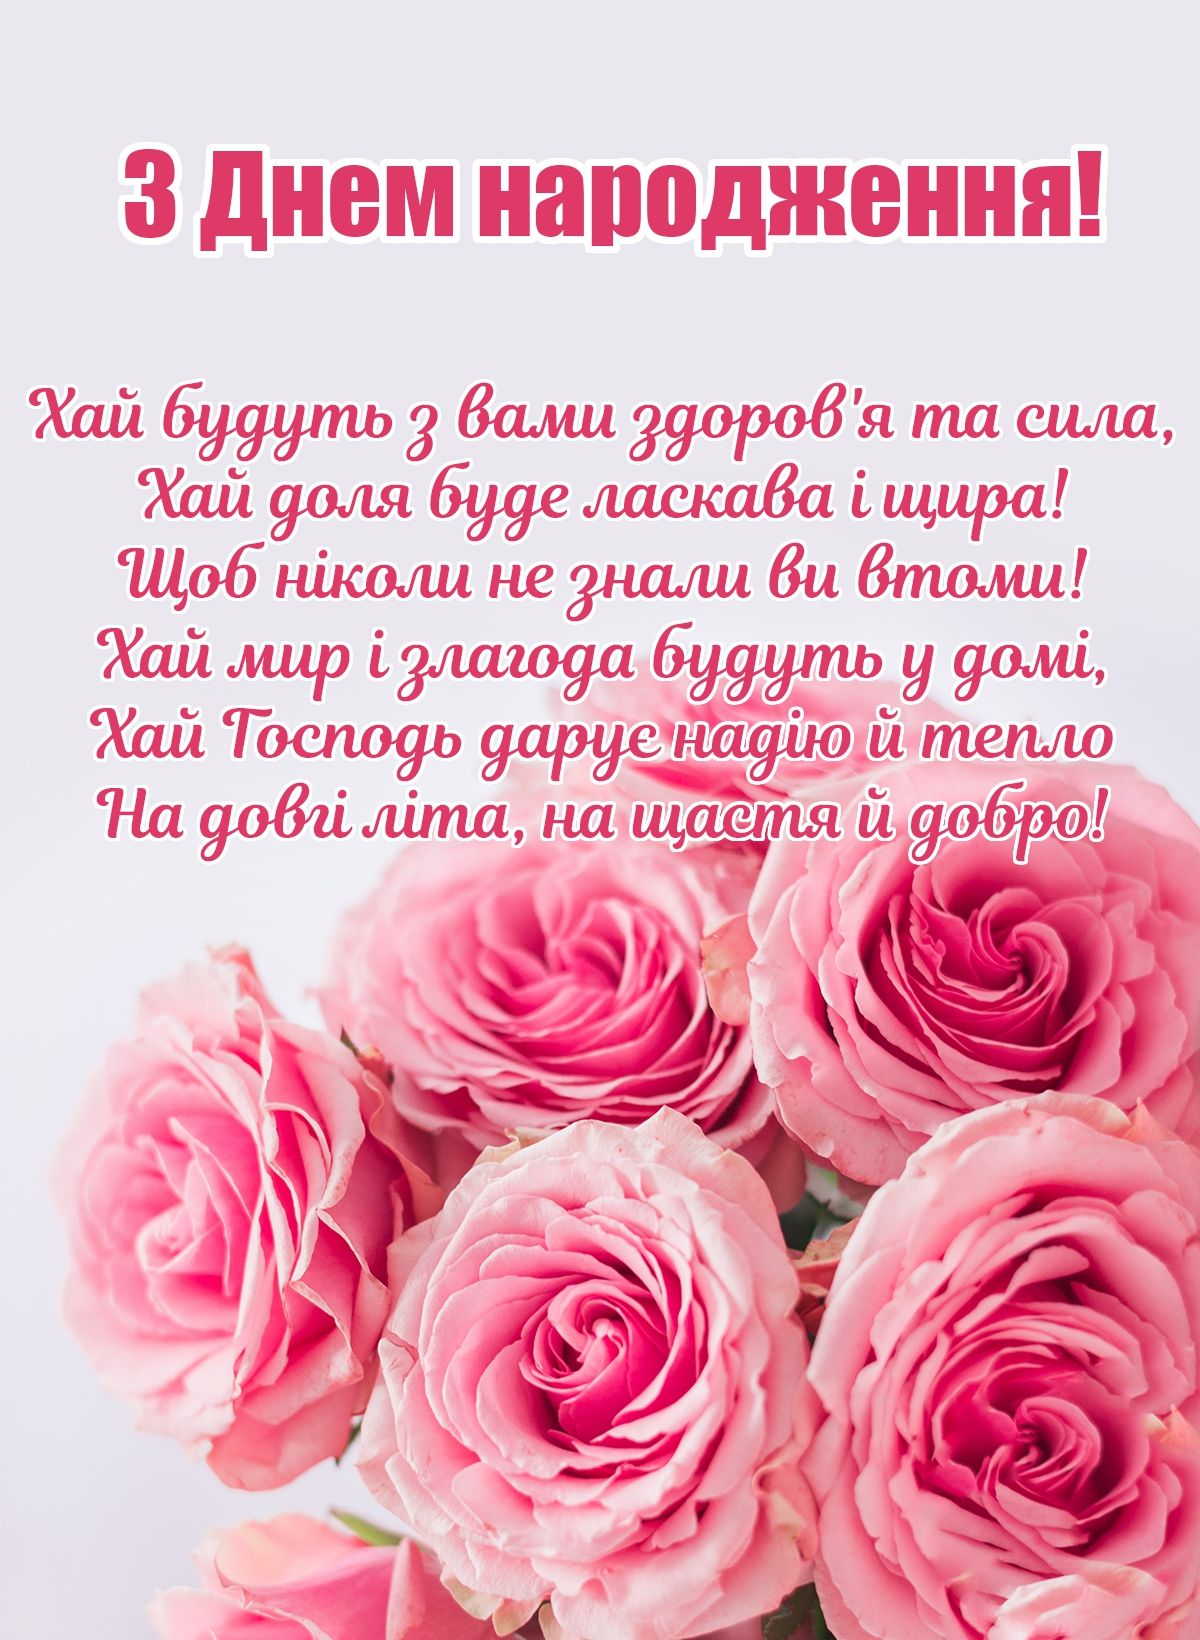 Привітання з днем народження близнюкам українською мовою
